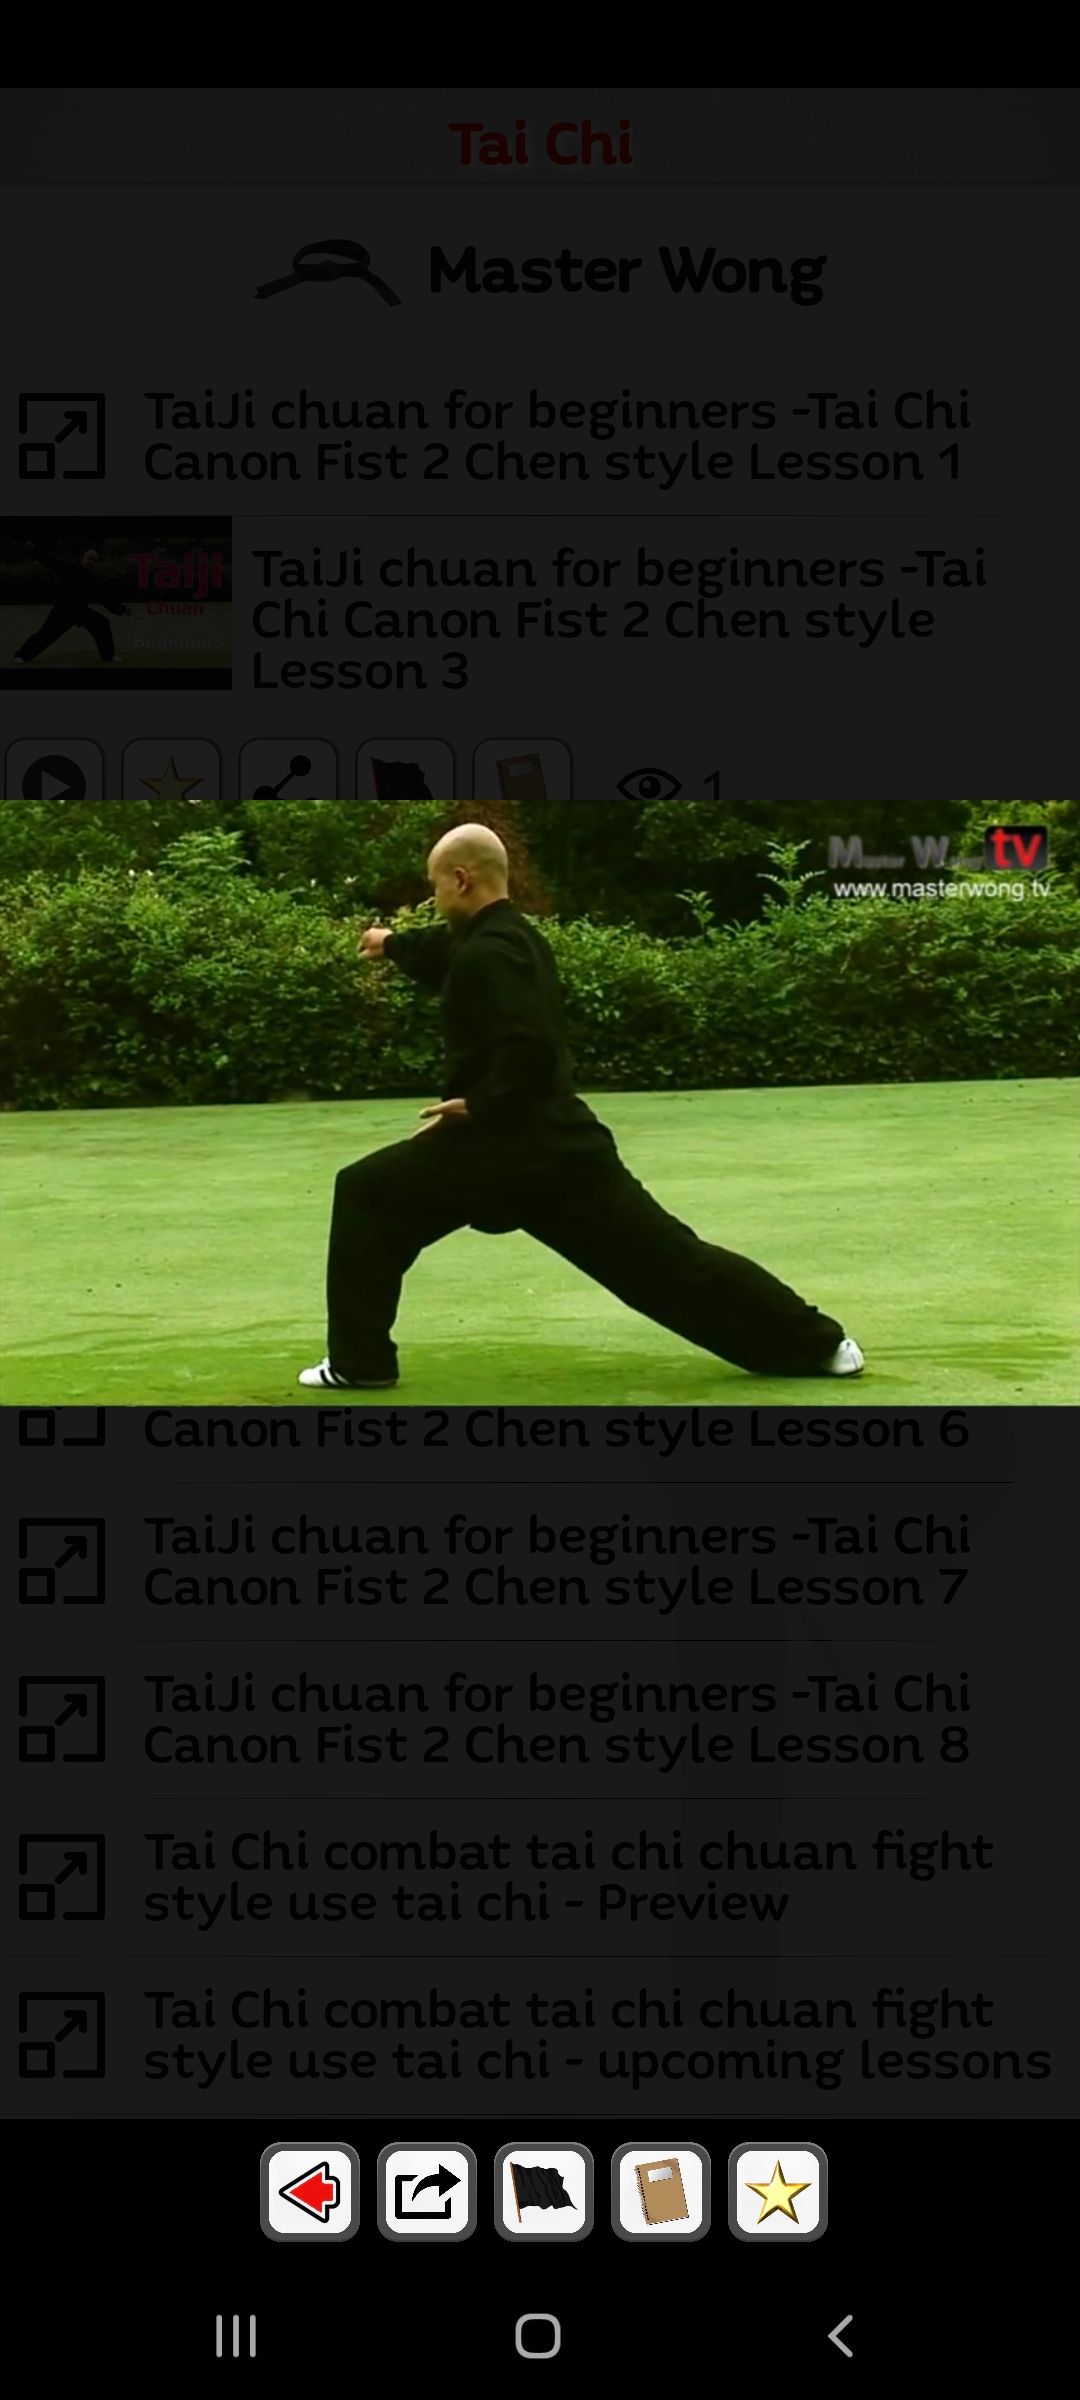 Martial Arts mobile app tai chi demo video